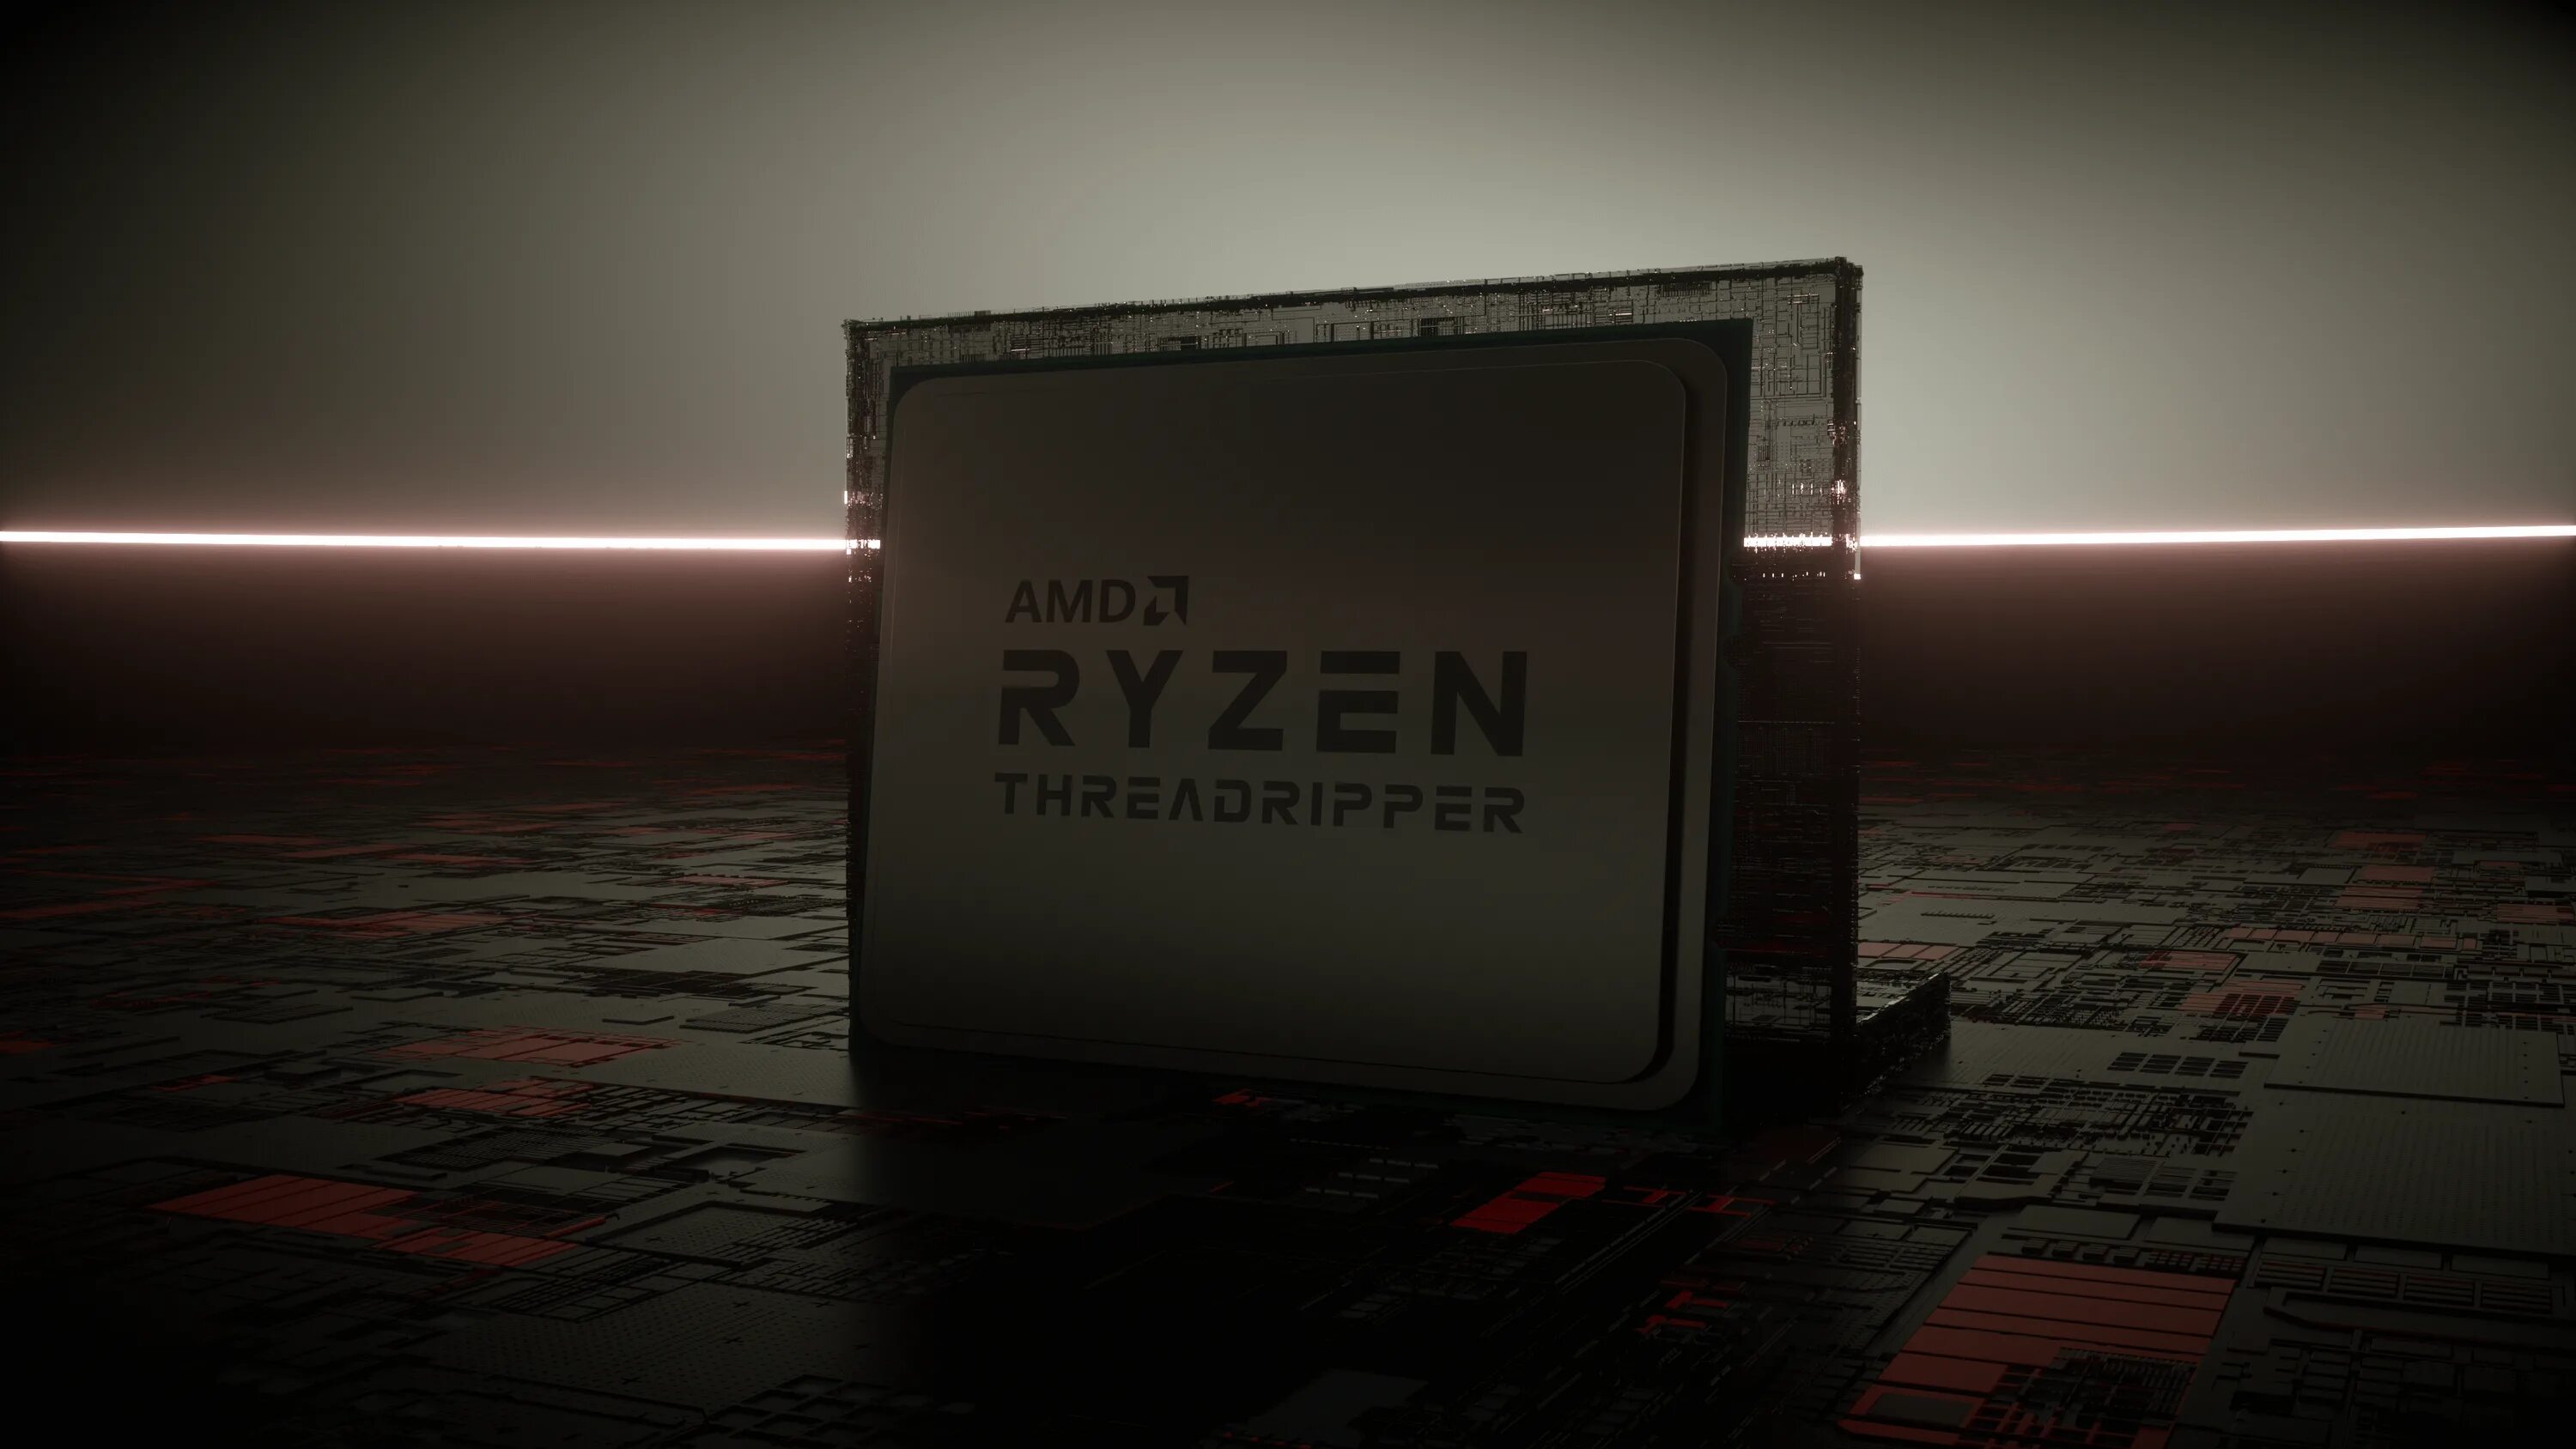 Ryzen 1920x1080. Ryzen. Обои Ryzen 4k. Фон AMD Ryzen. Threadripper логотип.